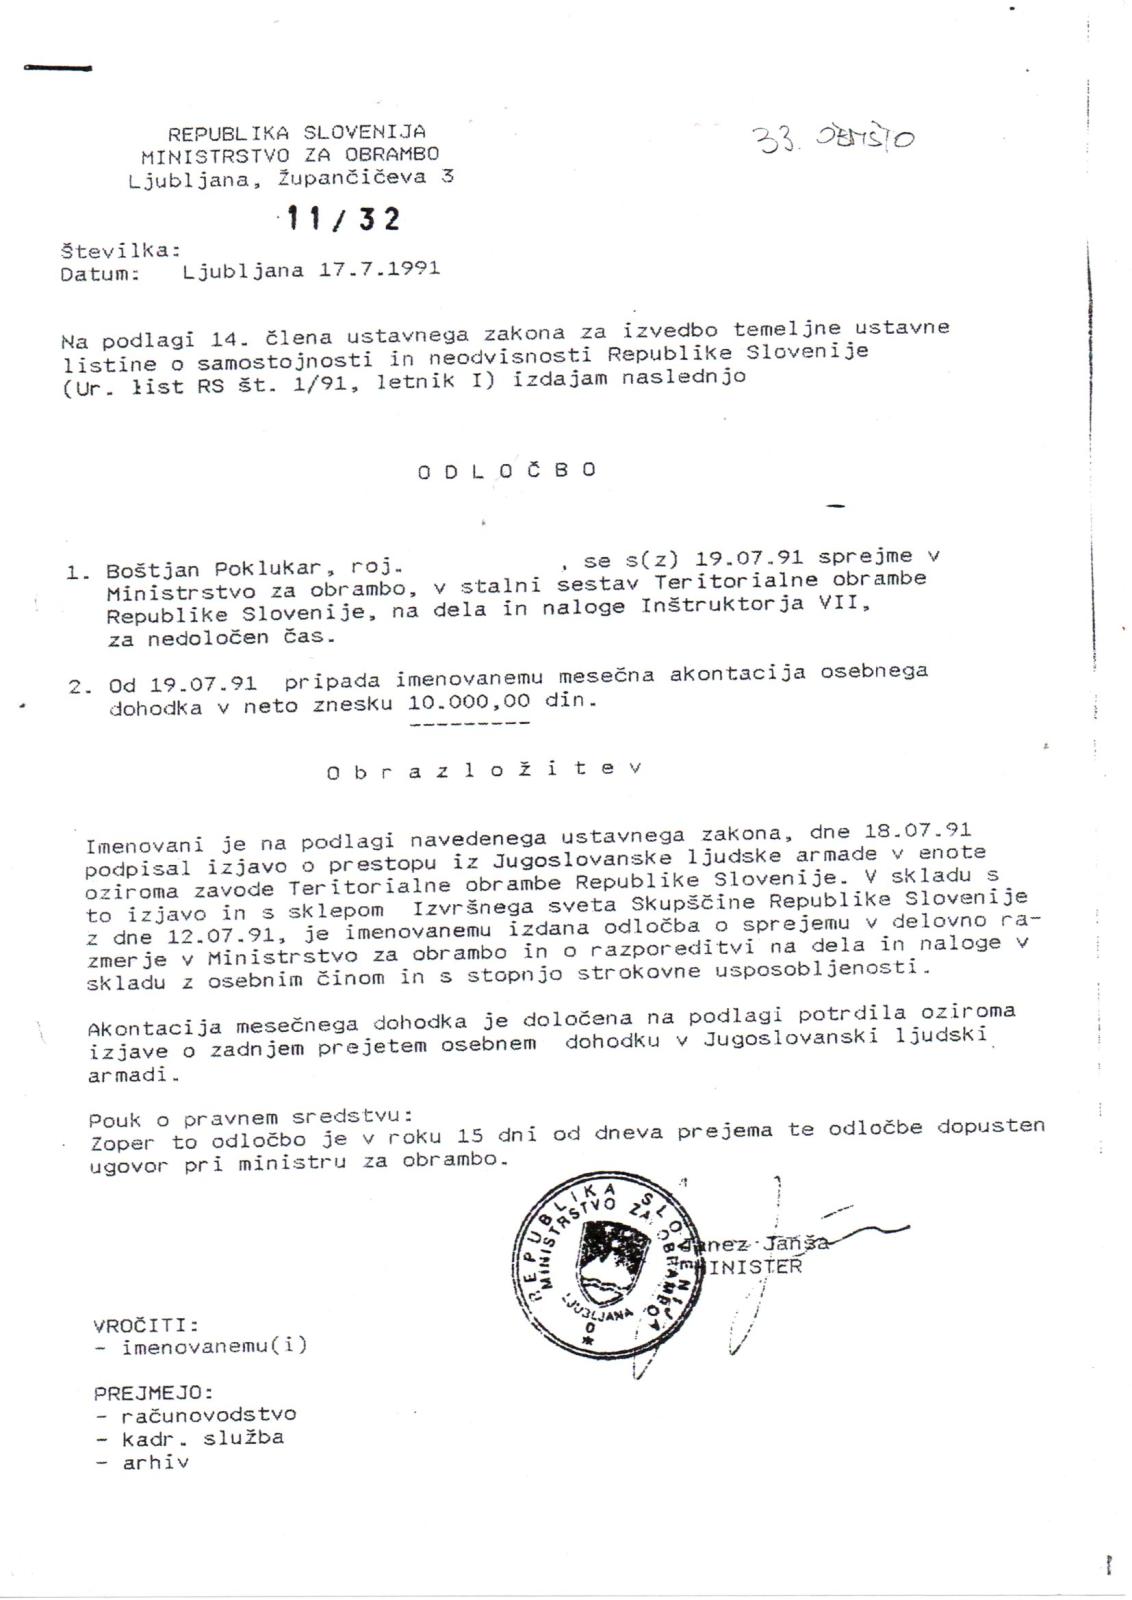 Odločba Janeza Janše o zaposlitvi Boštjana Poklukarja, 17.7.1991, zaposliitev z dnem 19.7.1991